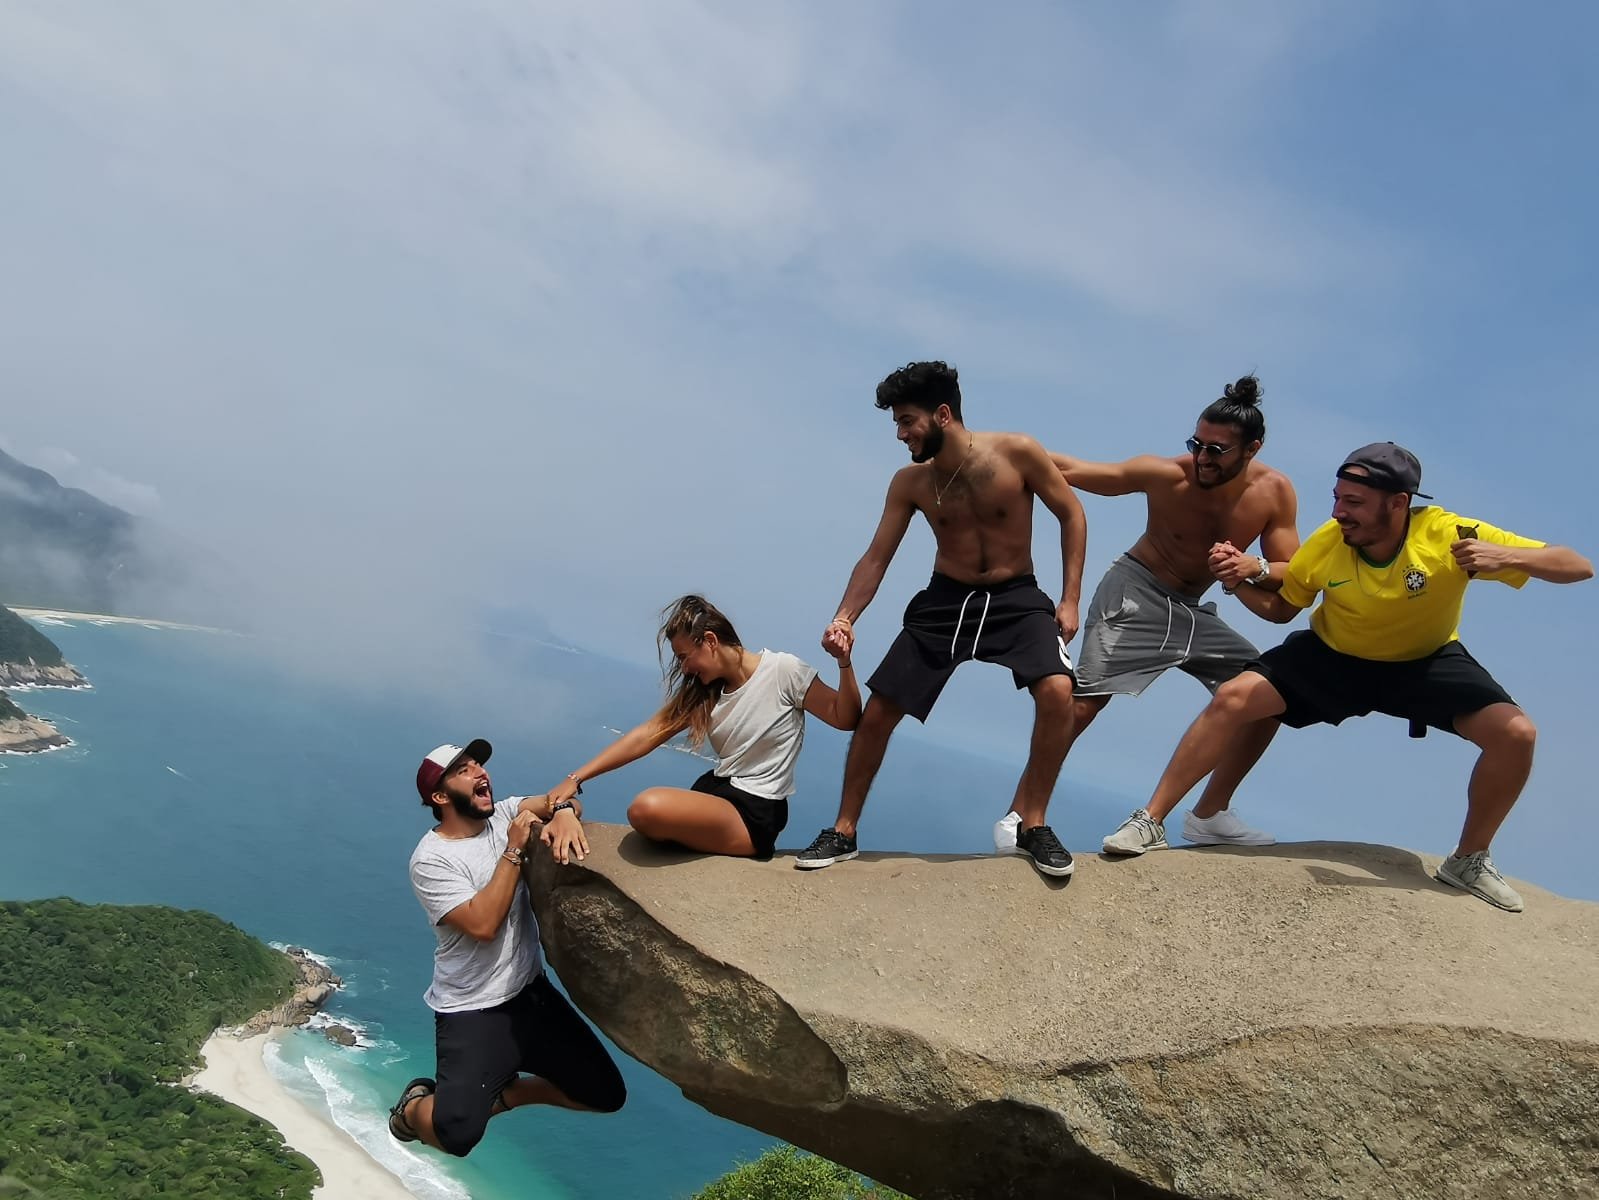 ריו הטרופית - סיור חופים לסלע הטלגרף